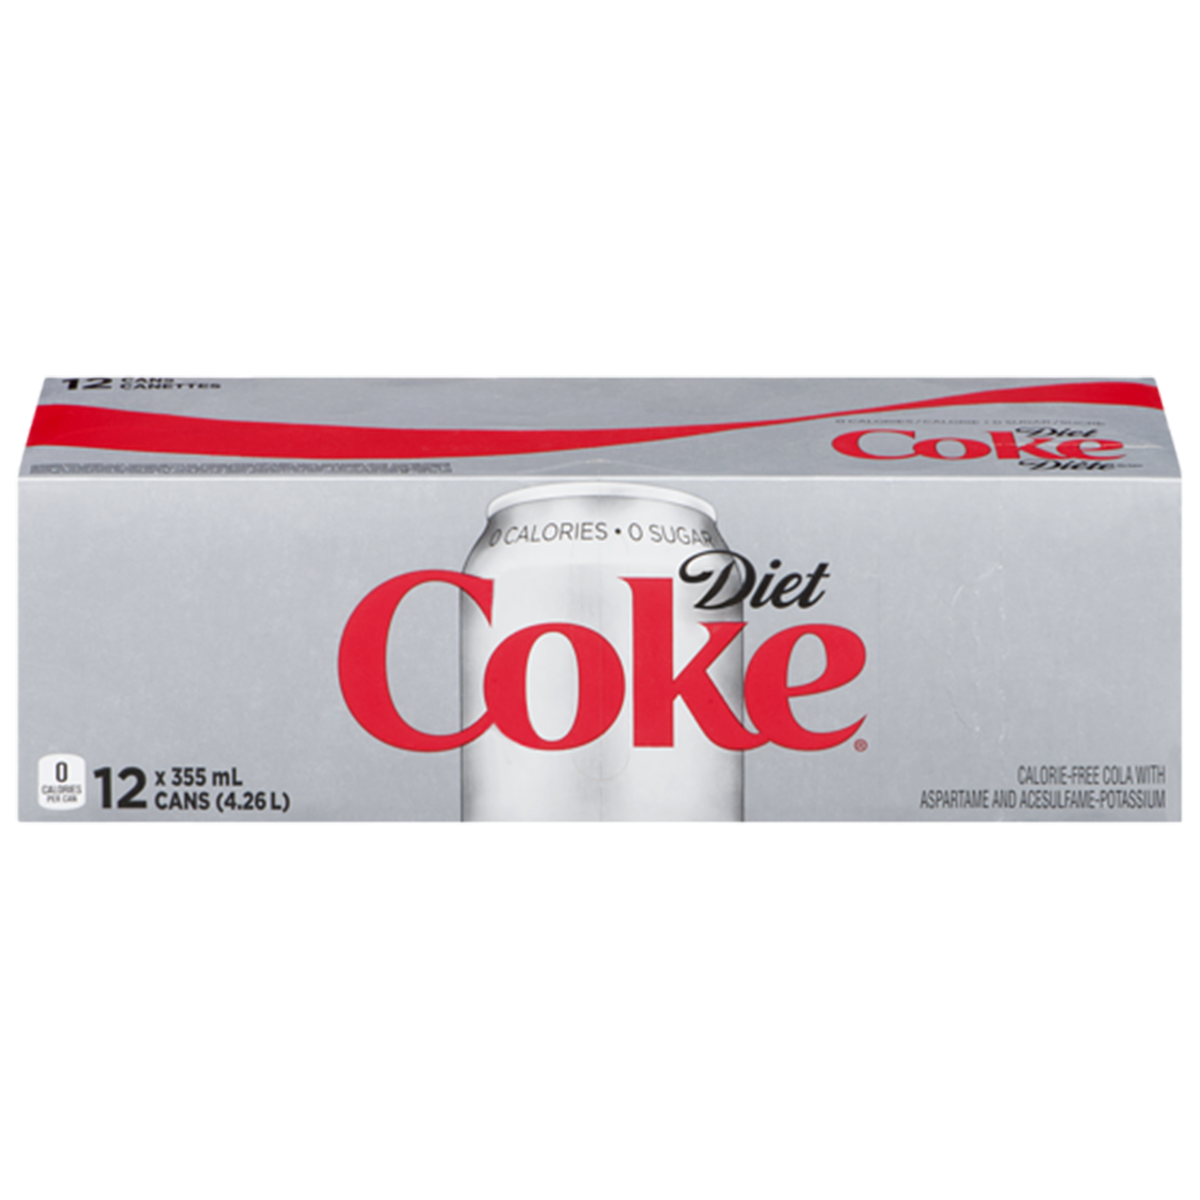 Coke Diet Cans, 12 pk